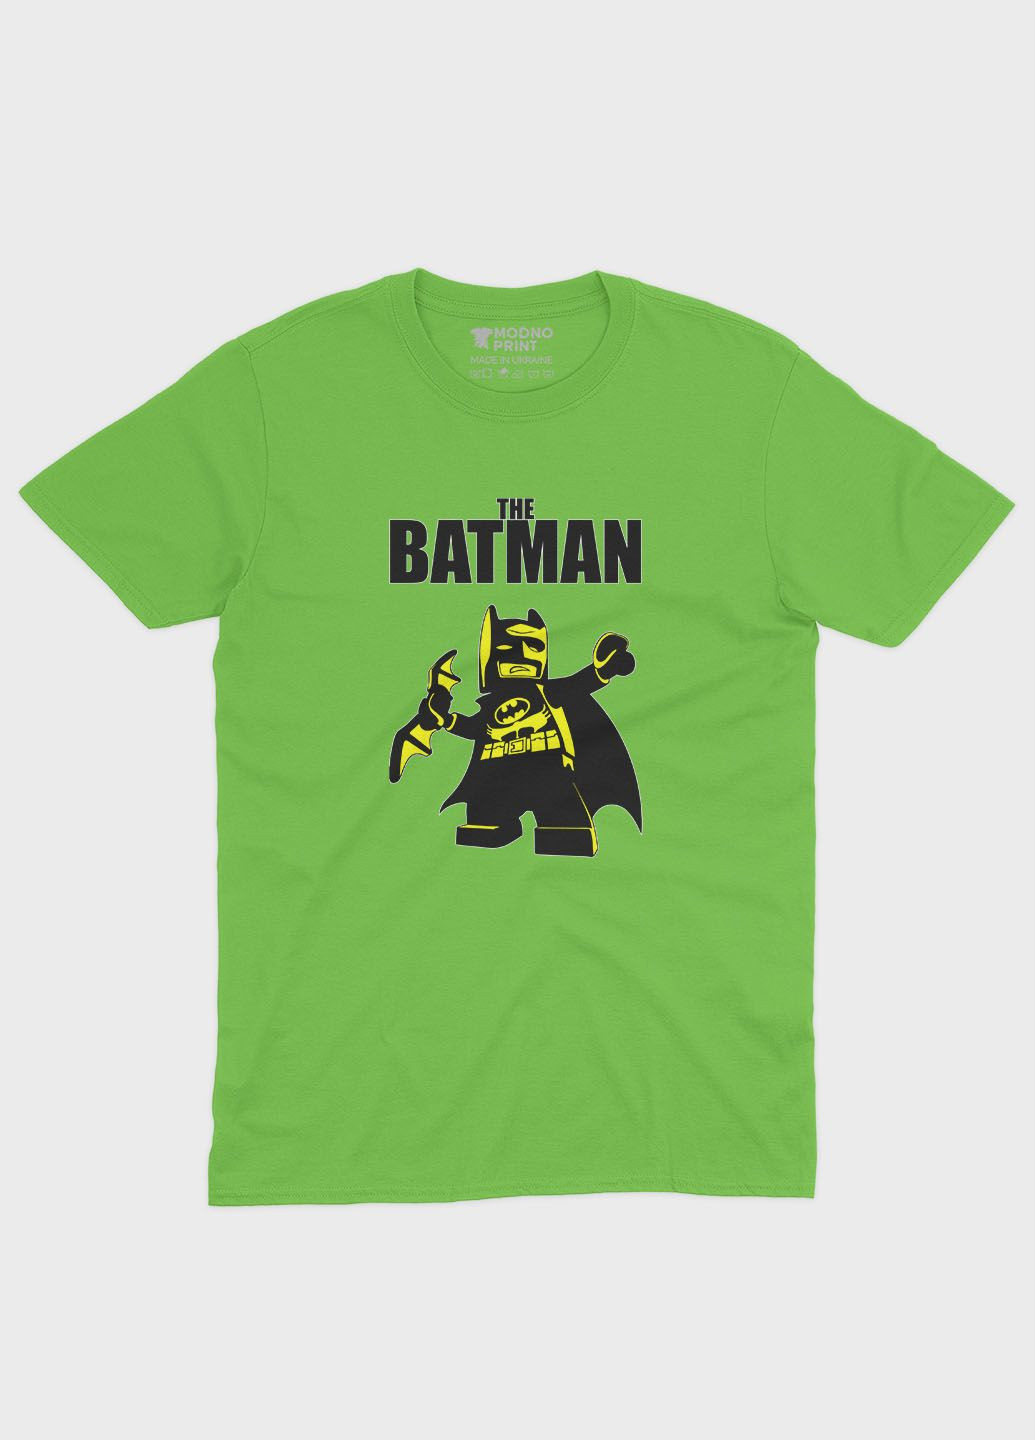 Салатовая демисезонная футболка для девочки с принтом супергероя - бэтмен (ts001-1-kiw-006-003-010-g) Modno